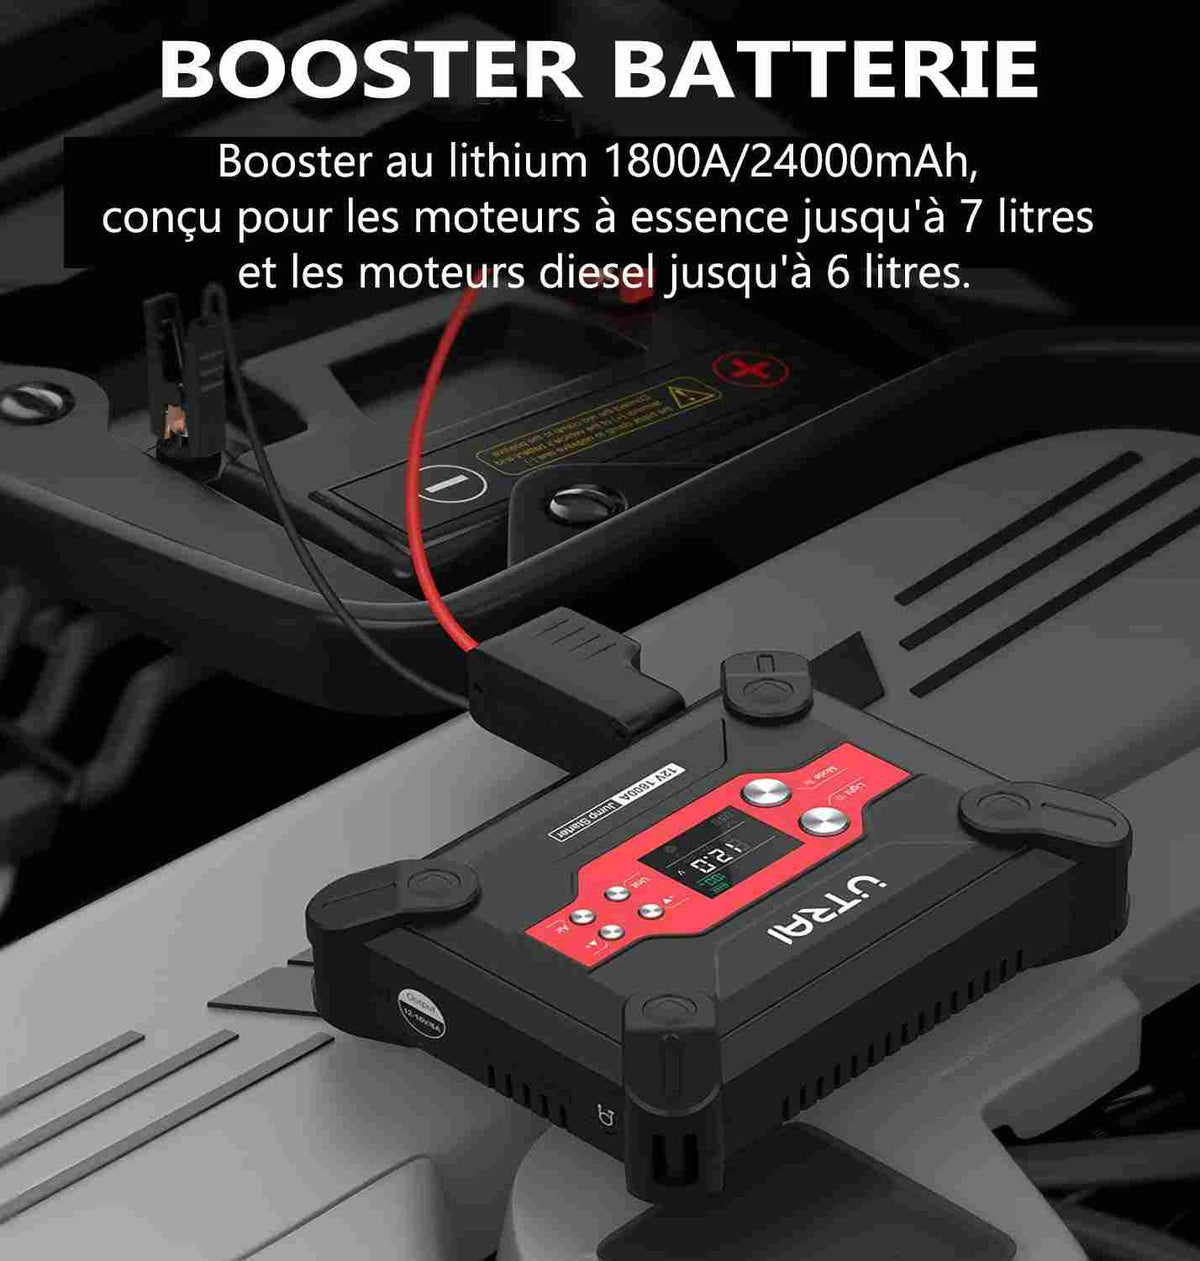 Choisissez le booster de batterie parfait pour votre véhicule et